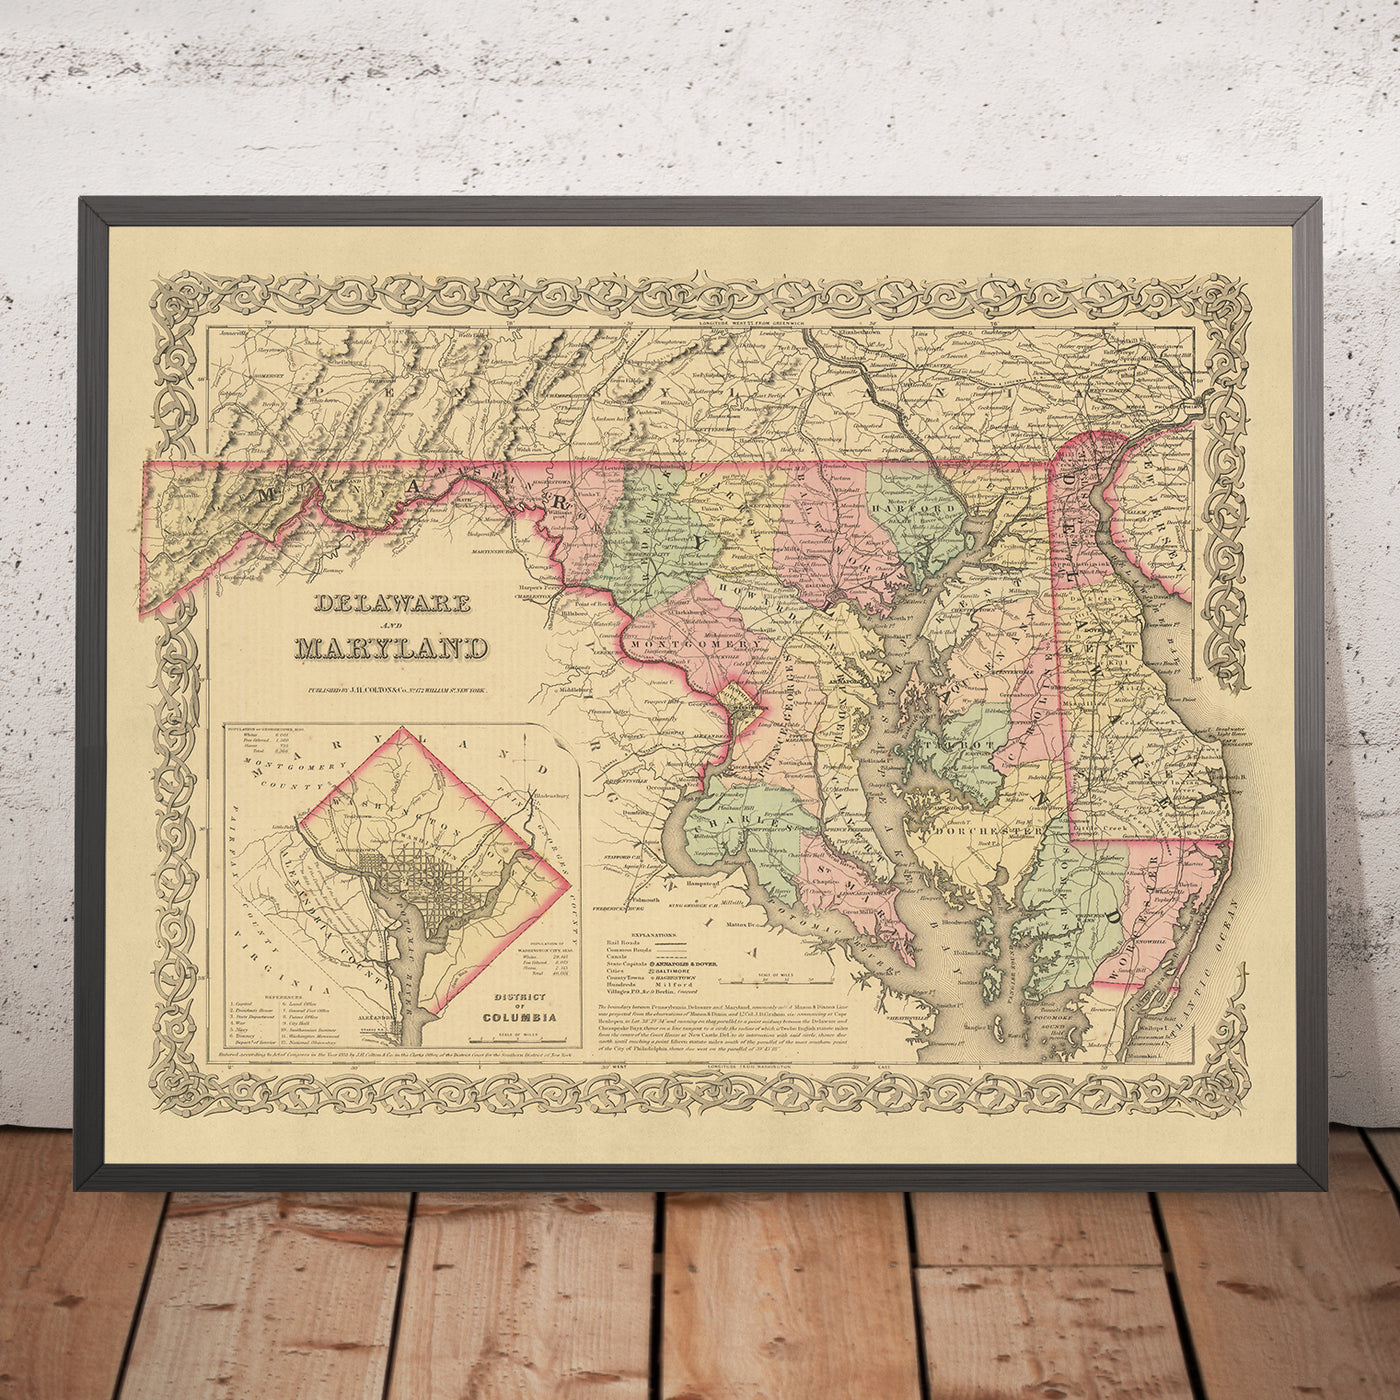 Mapa antiguo de Delaware, Maryland y Washington DC por JH Colton, 1859: Wilmington, Baltimore, Annapolis, Dover